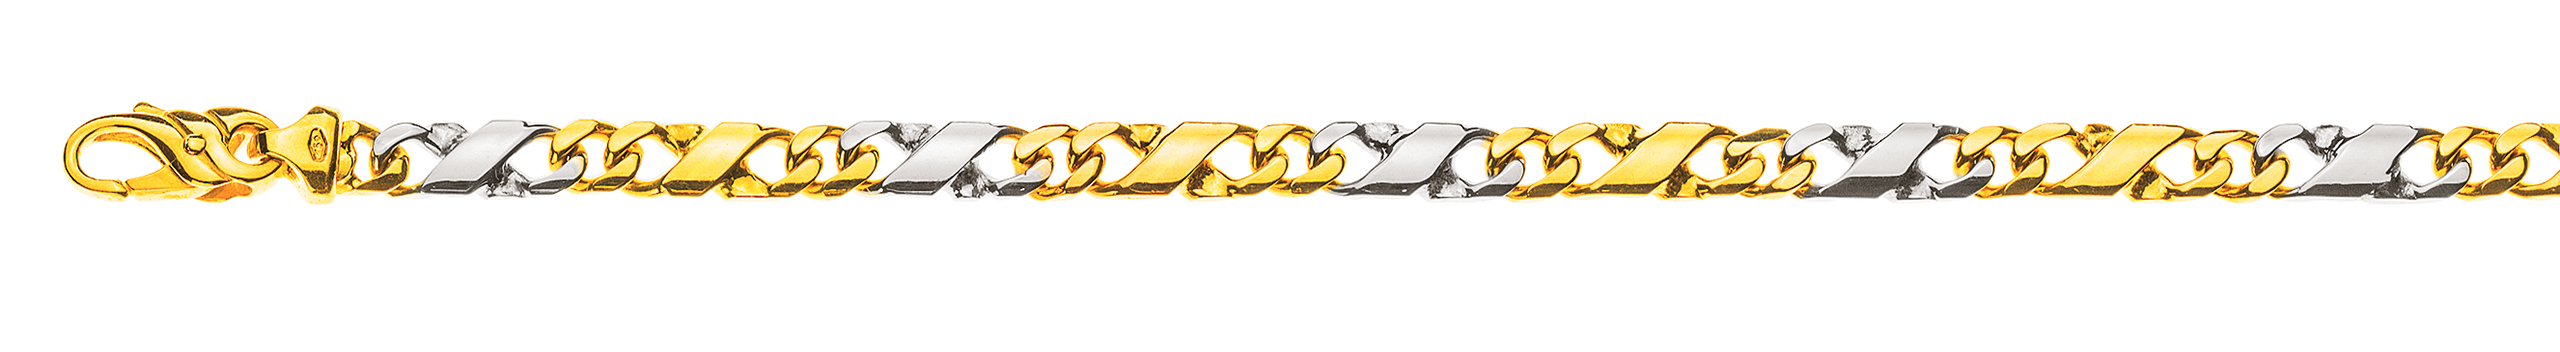 AURONOS Prestige Armband Carrera 18K Gelb-/Weissgold 19cm 5mm